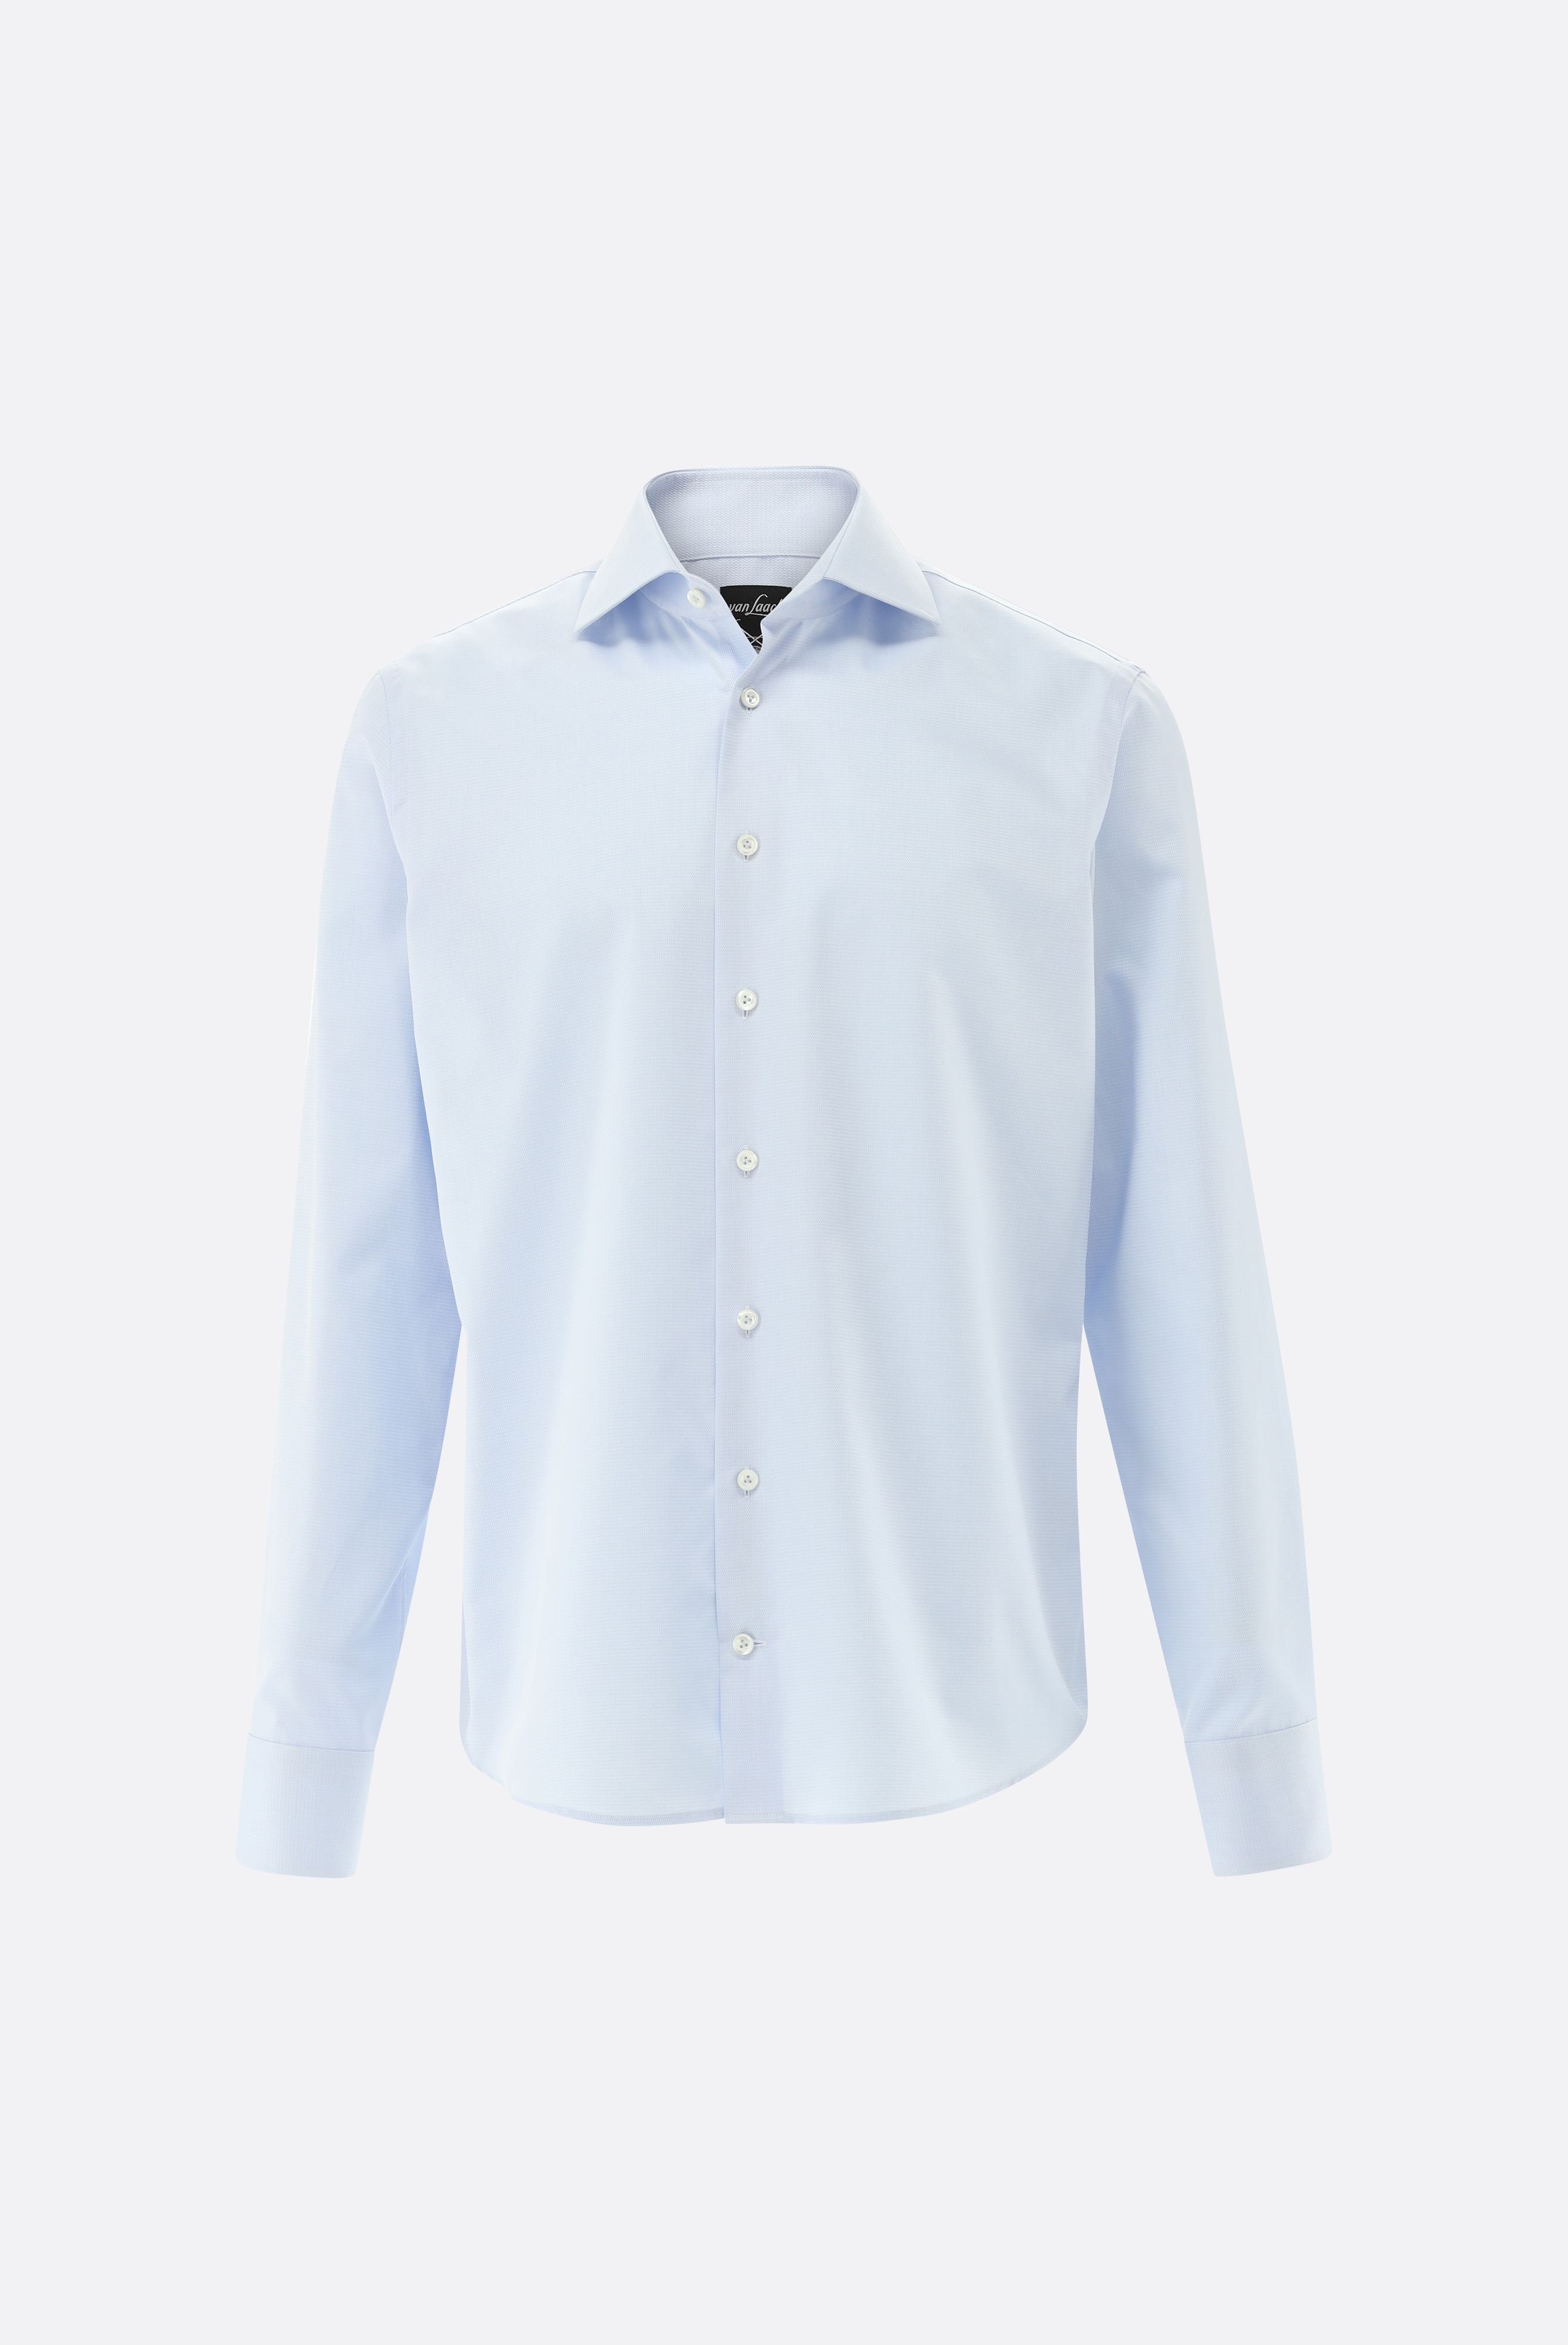 Bügelleichte Hemden+Bügelfreies Twil Hemd mit Struktur Tailor Fit+20.2020.BQ.150301.720.38